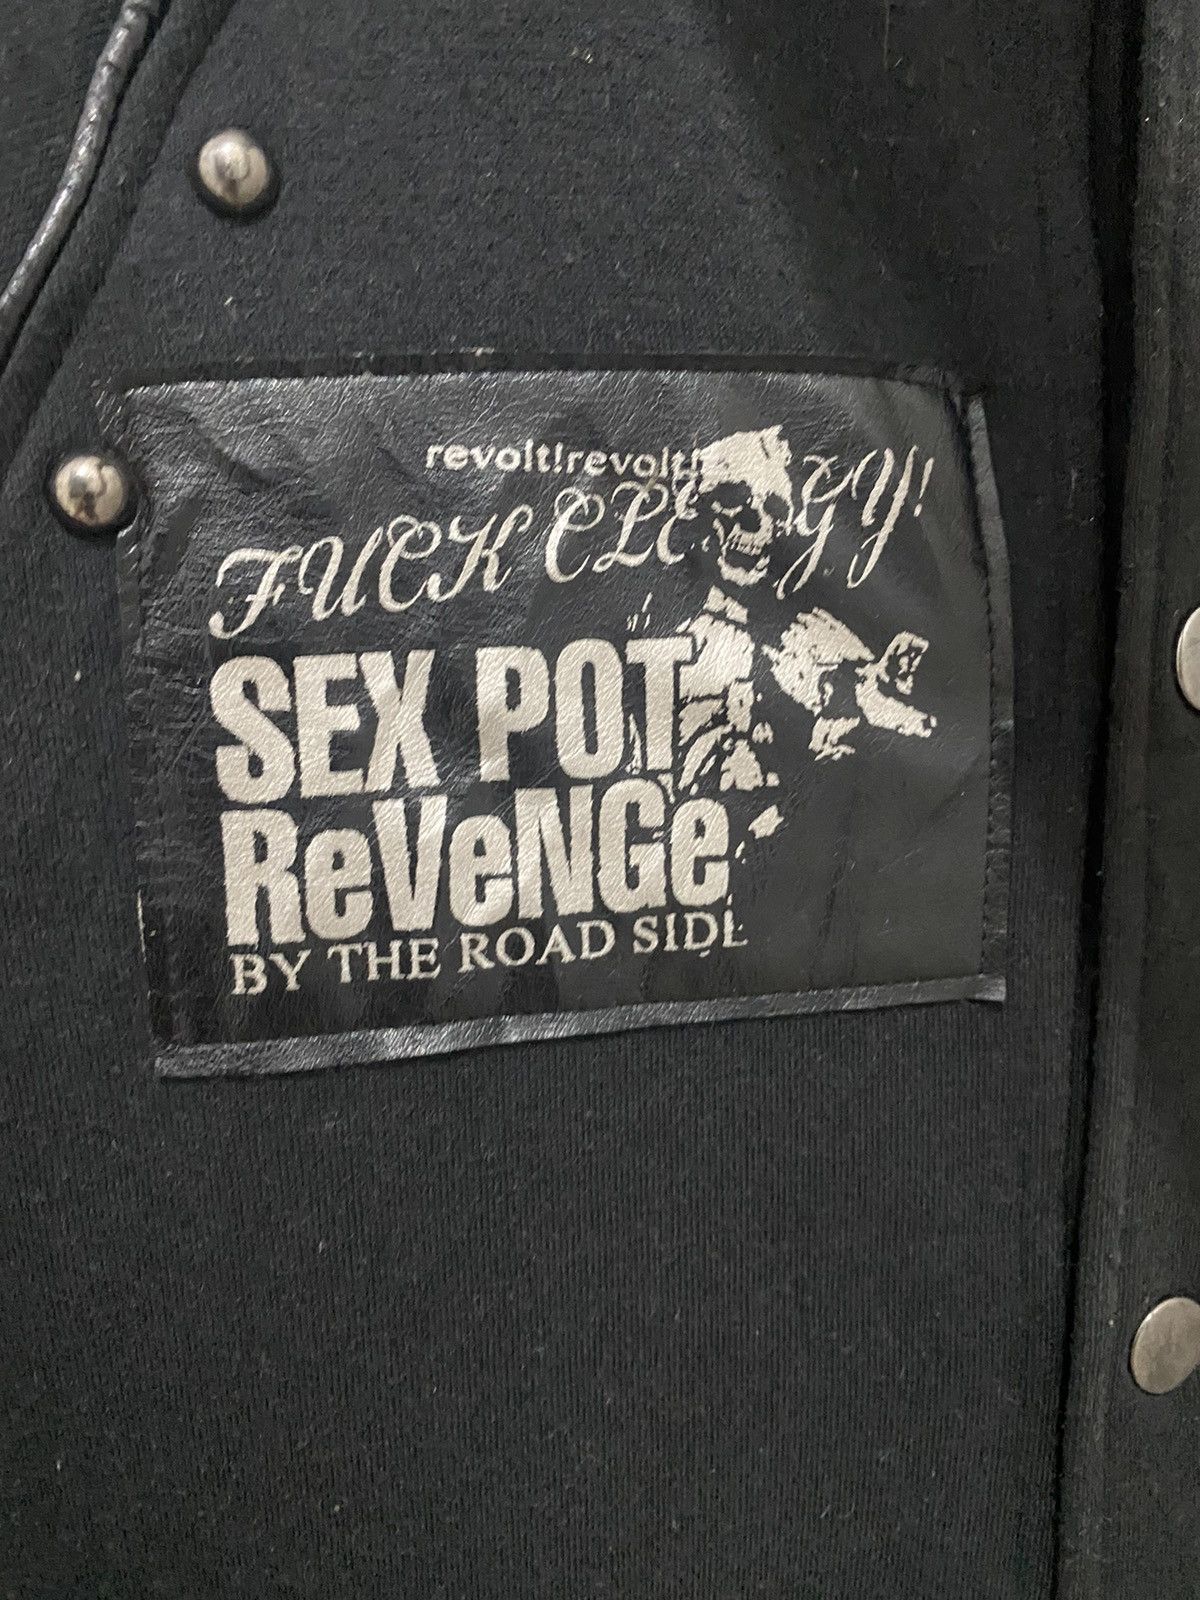 If Six Was Nine - Sex Pot Revenge Punk Skull Button Up Cotton Jacket Fit S - 5